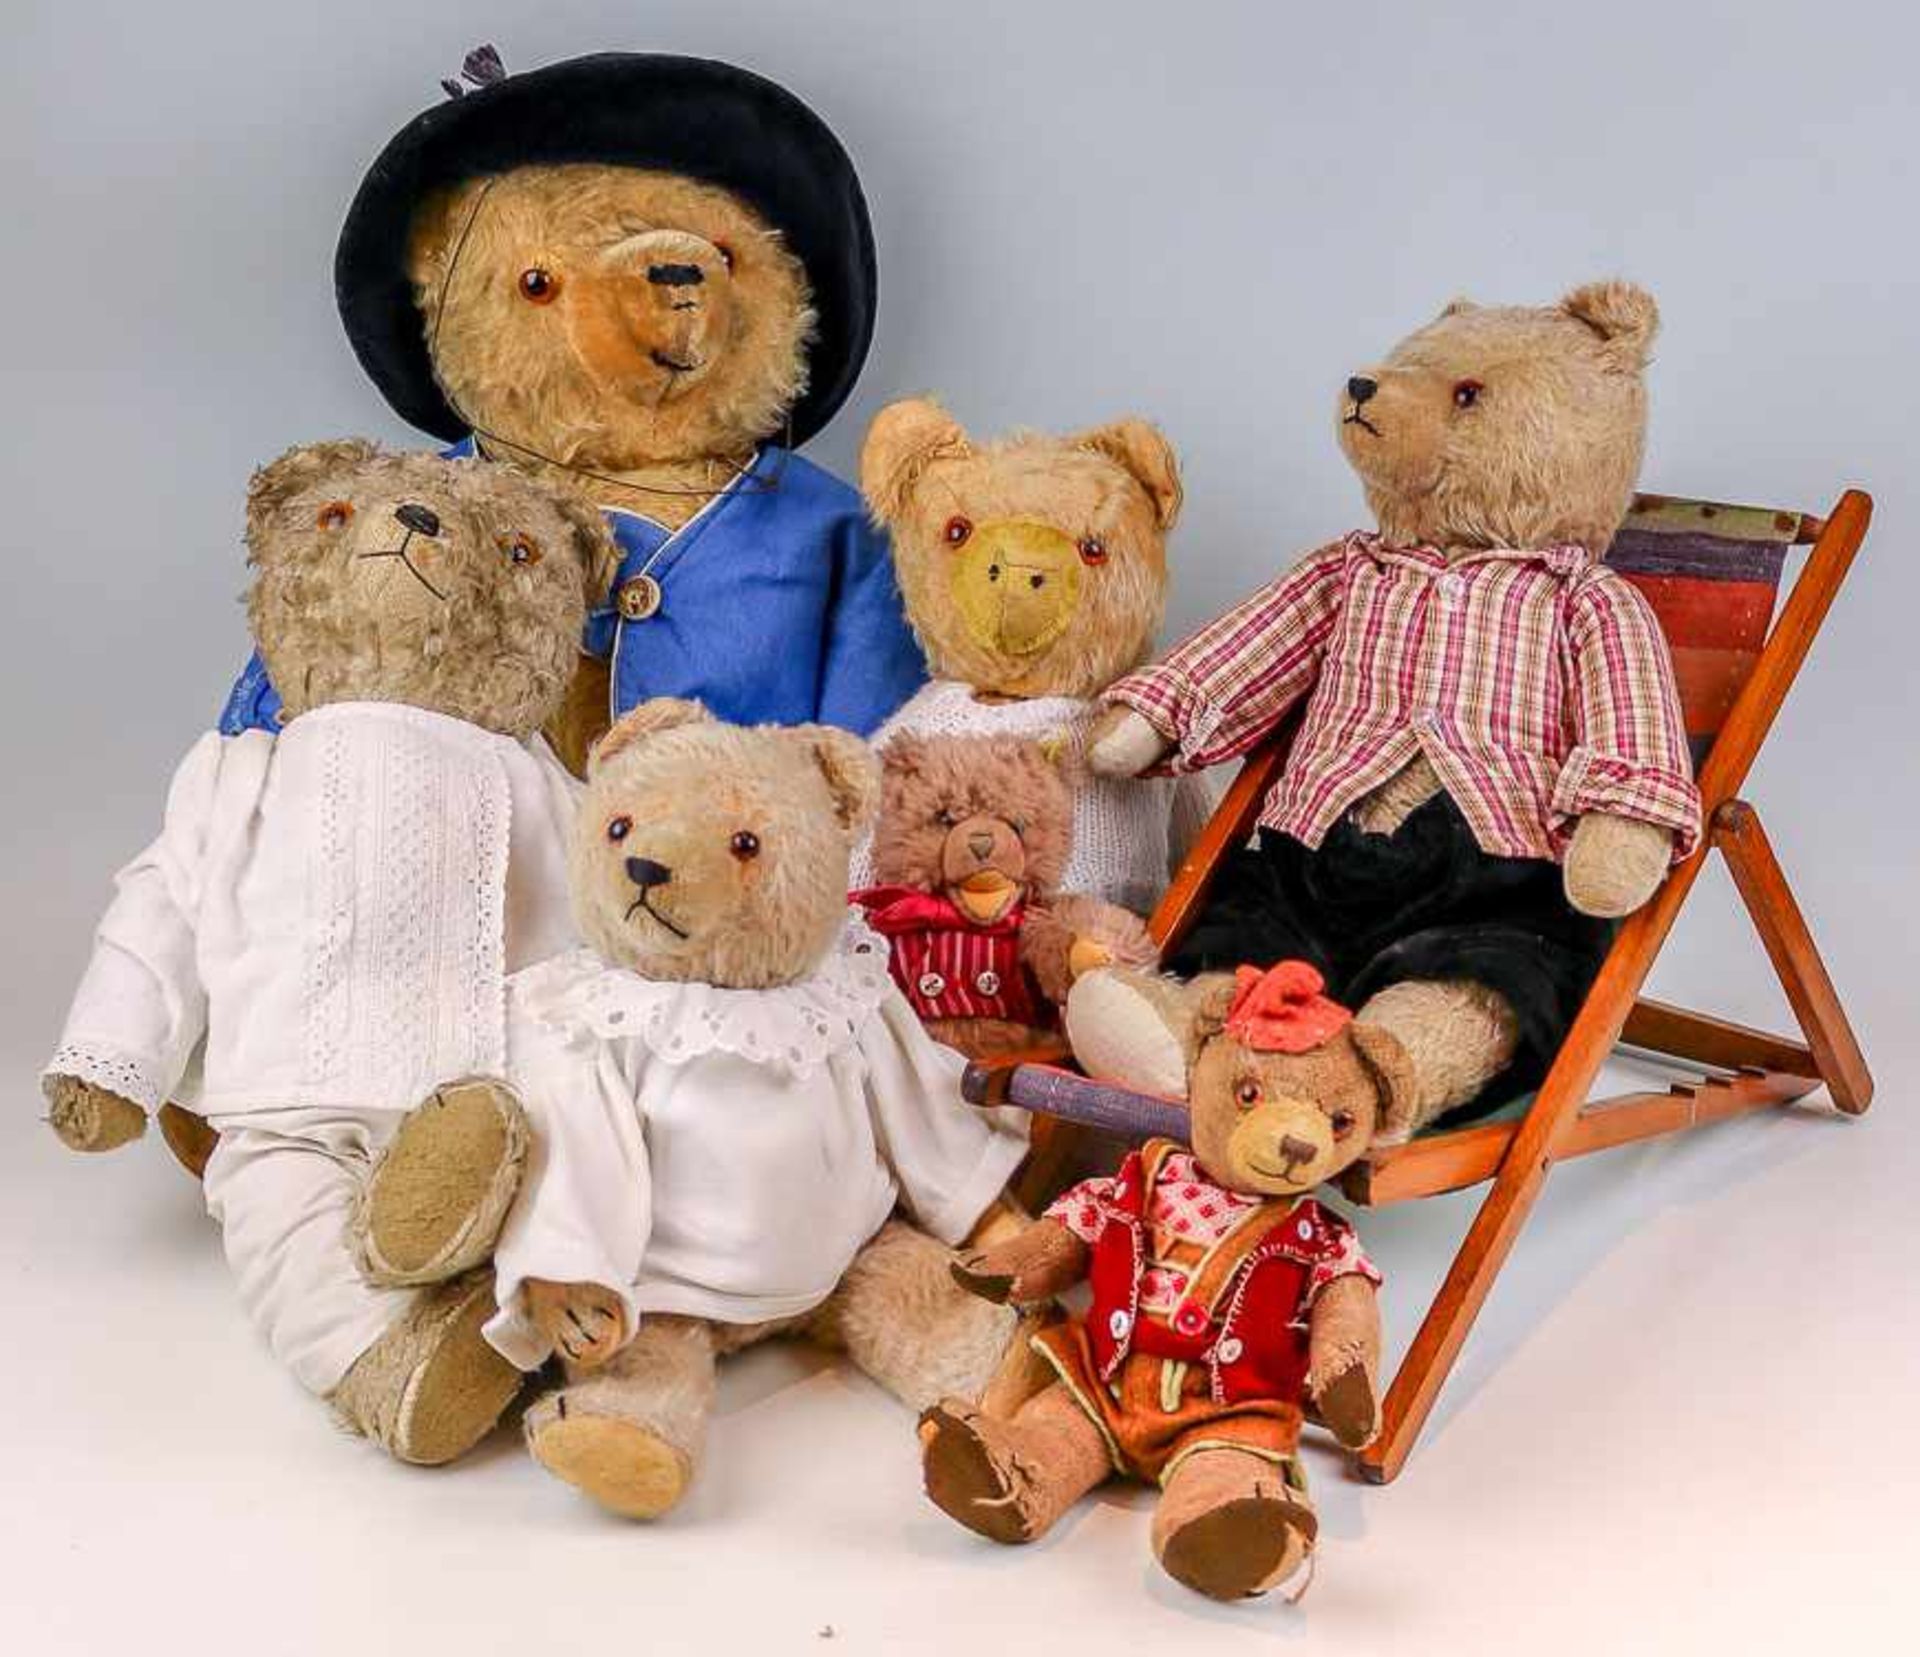 Sammlung von sieben TeddybärenUm ca. 1950/90Bewegliche Köpfe und Glieder. Glasaugen. Bekleidet. (